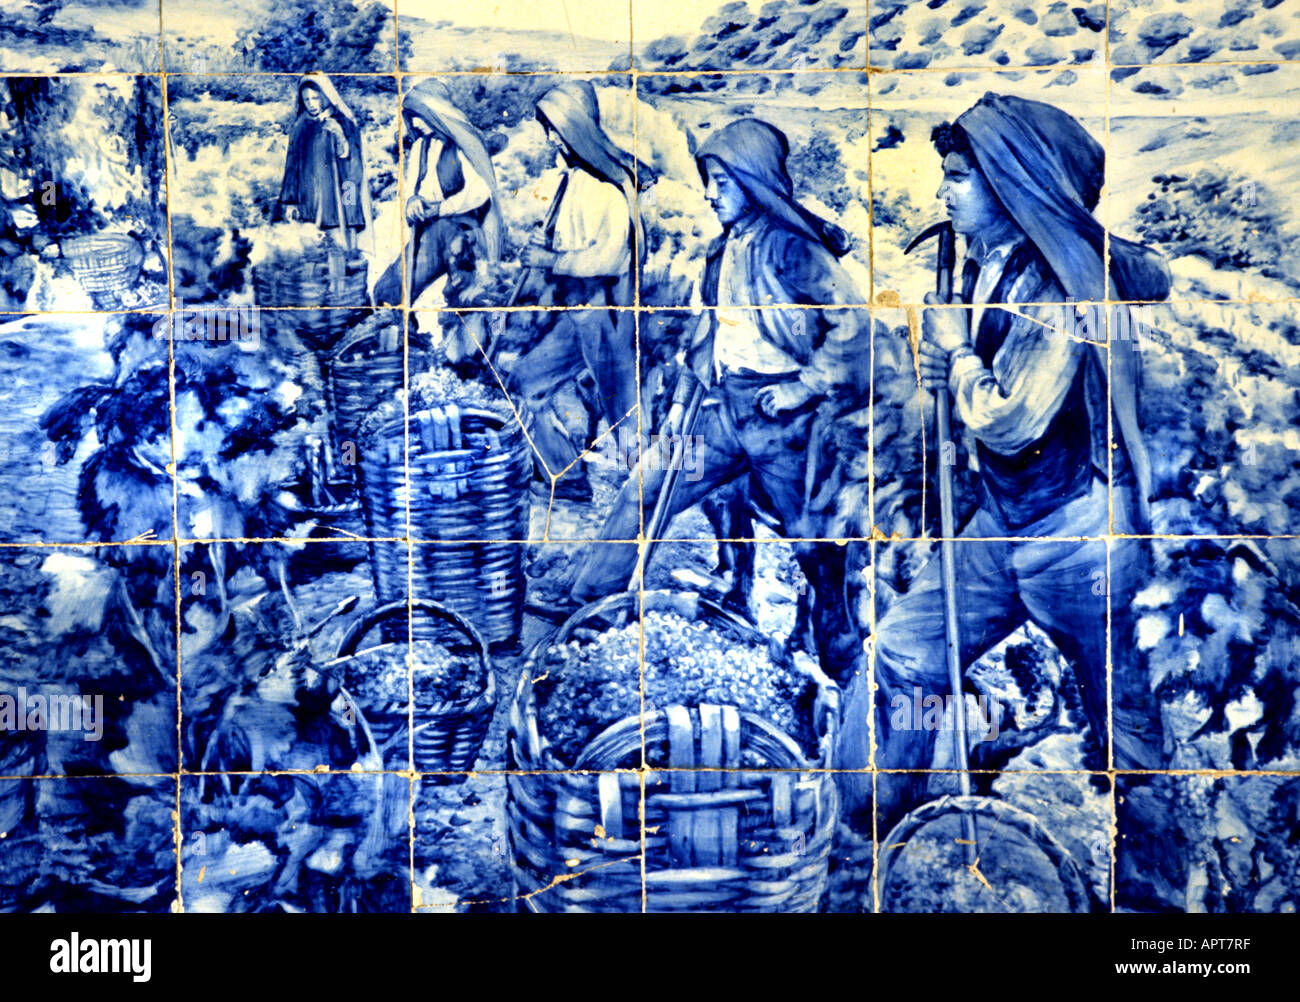 Fliesen Art Blue Azuleos Malerei Maler Gemälde Kunst Künstler Darstellung Bild Darstellung Farbe Technik Farbe Bilder Kunst Stockfoto